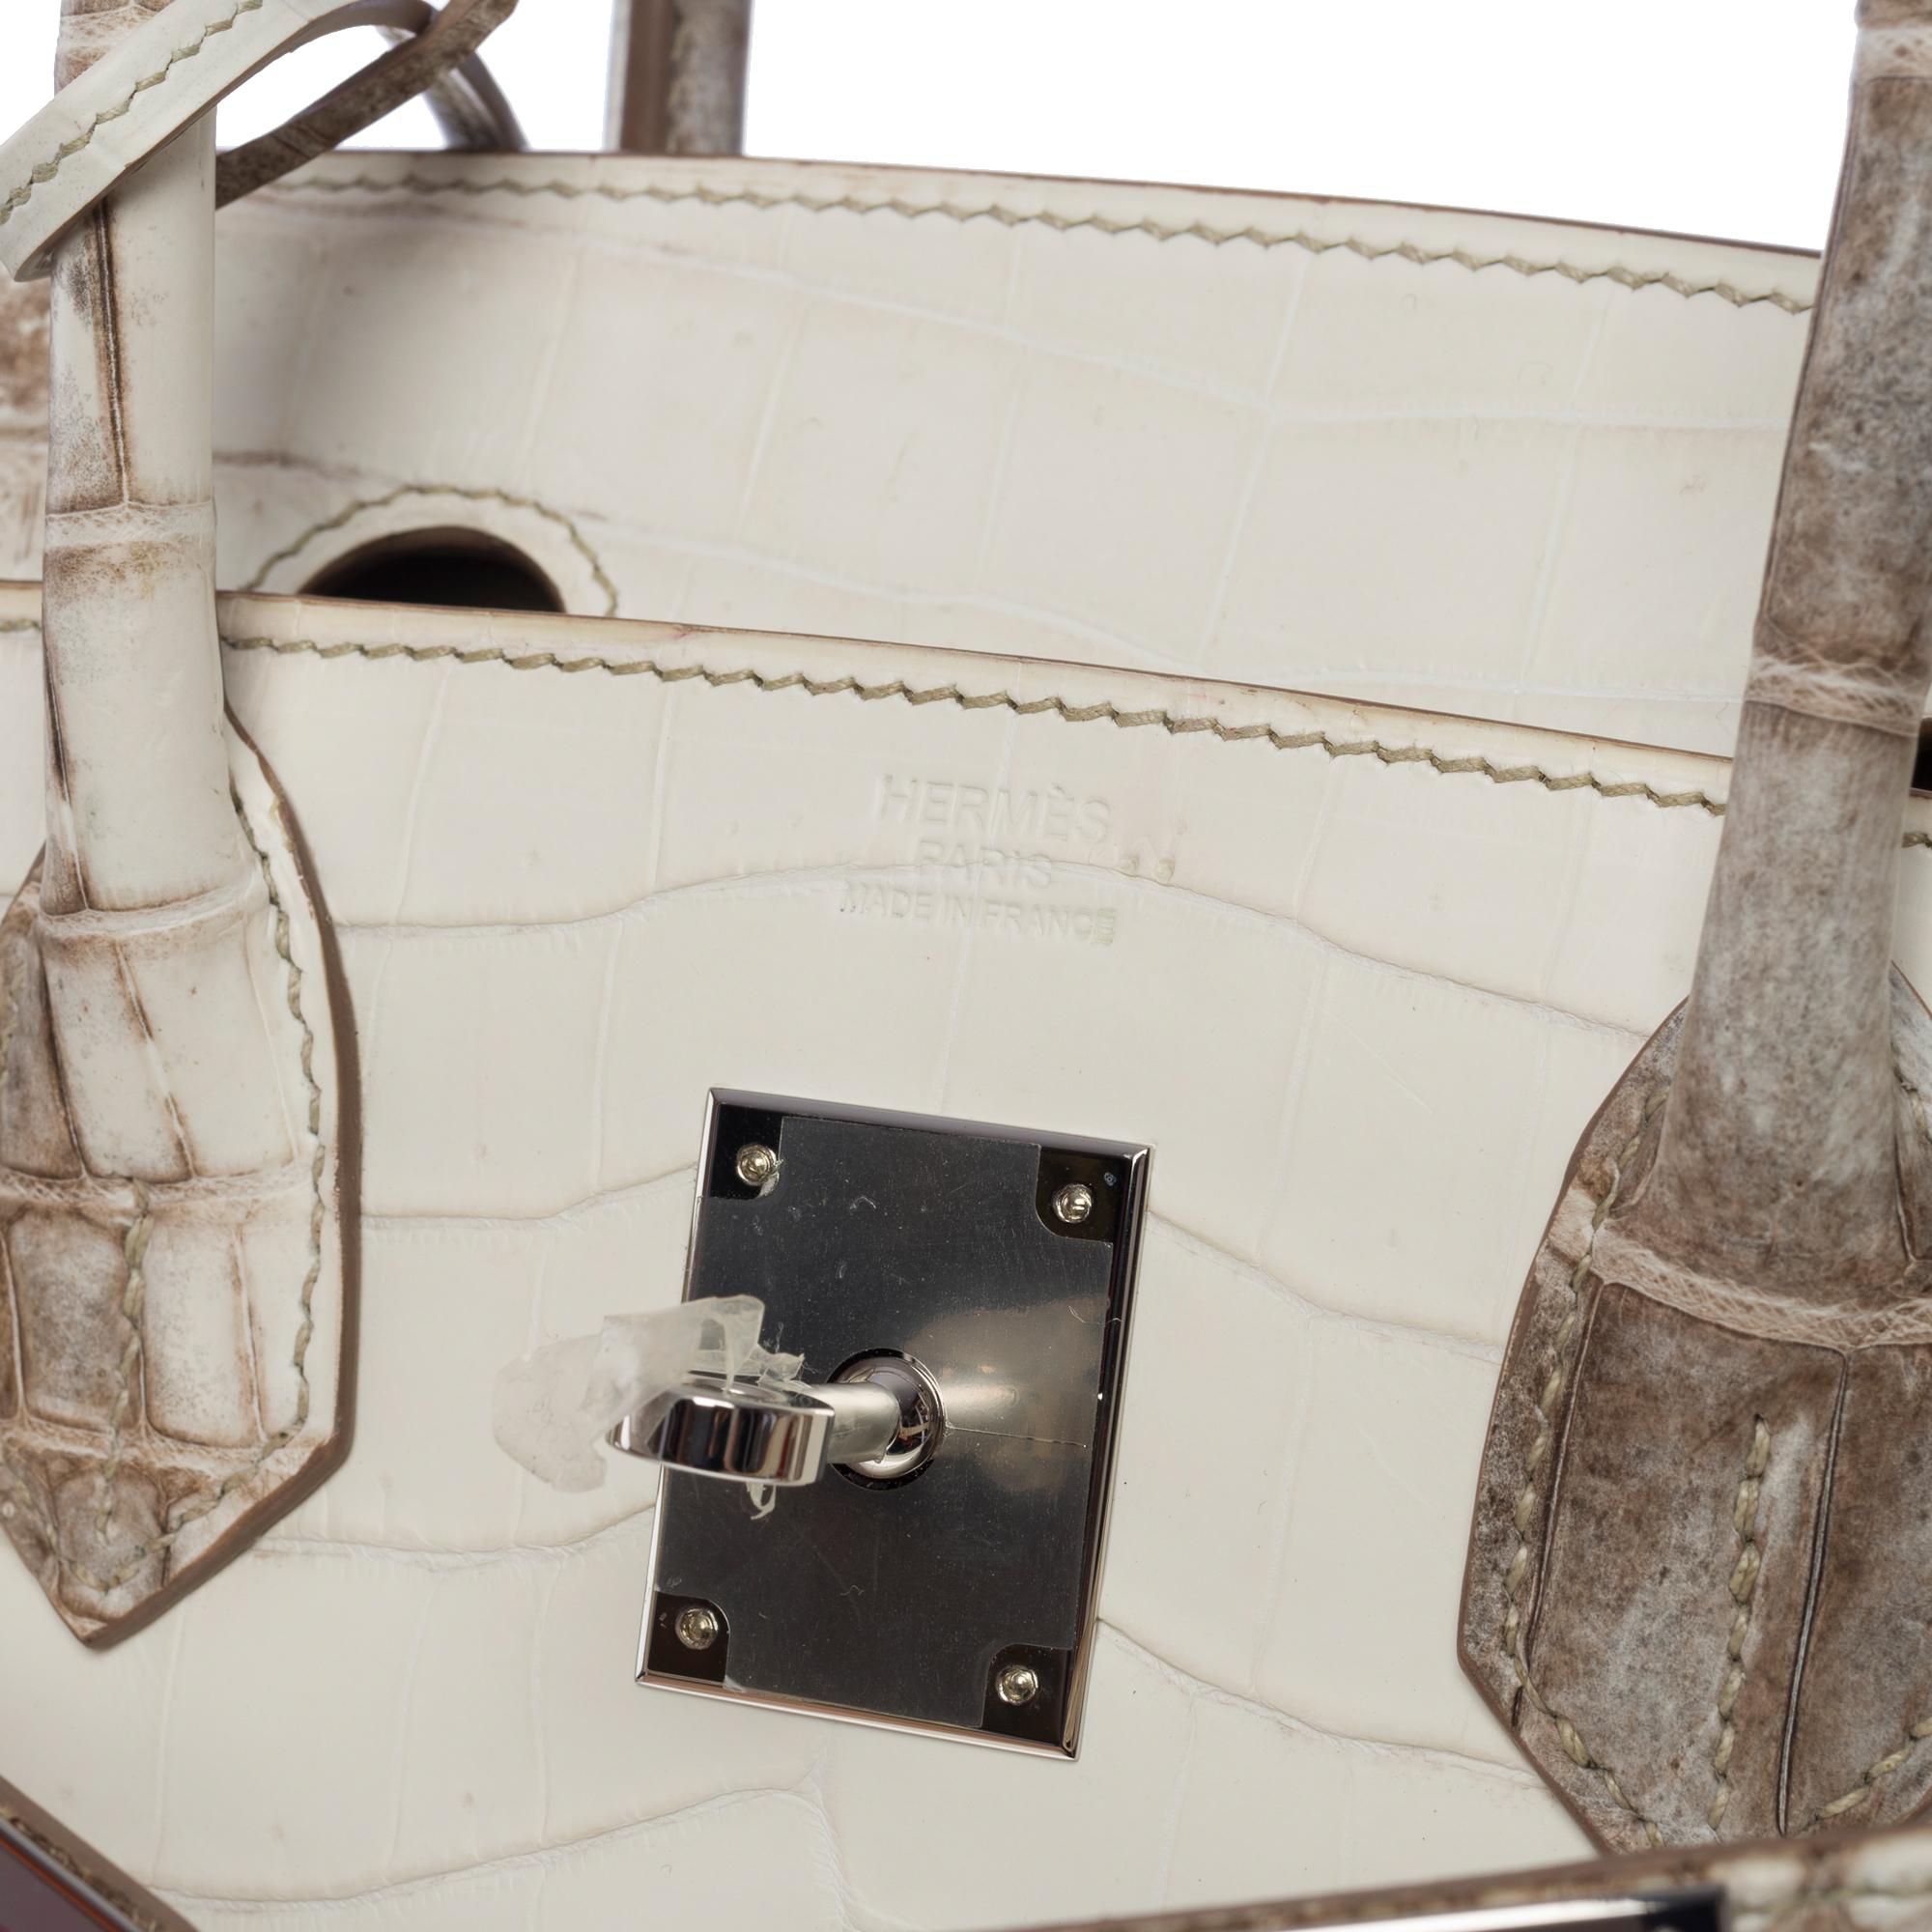 Seltene neue Hermès Birkin 30 Himalaya Handtasche in weißem Nilkrokodilleder, SHW 2